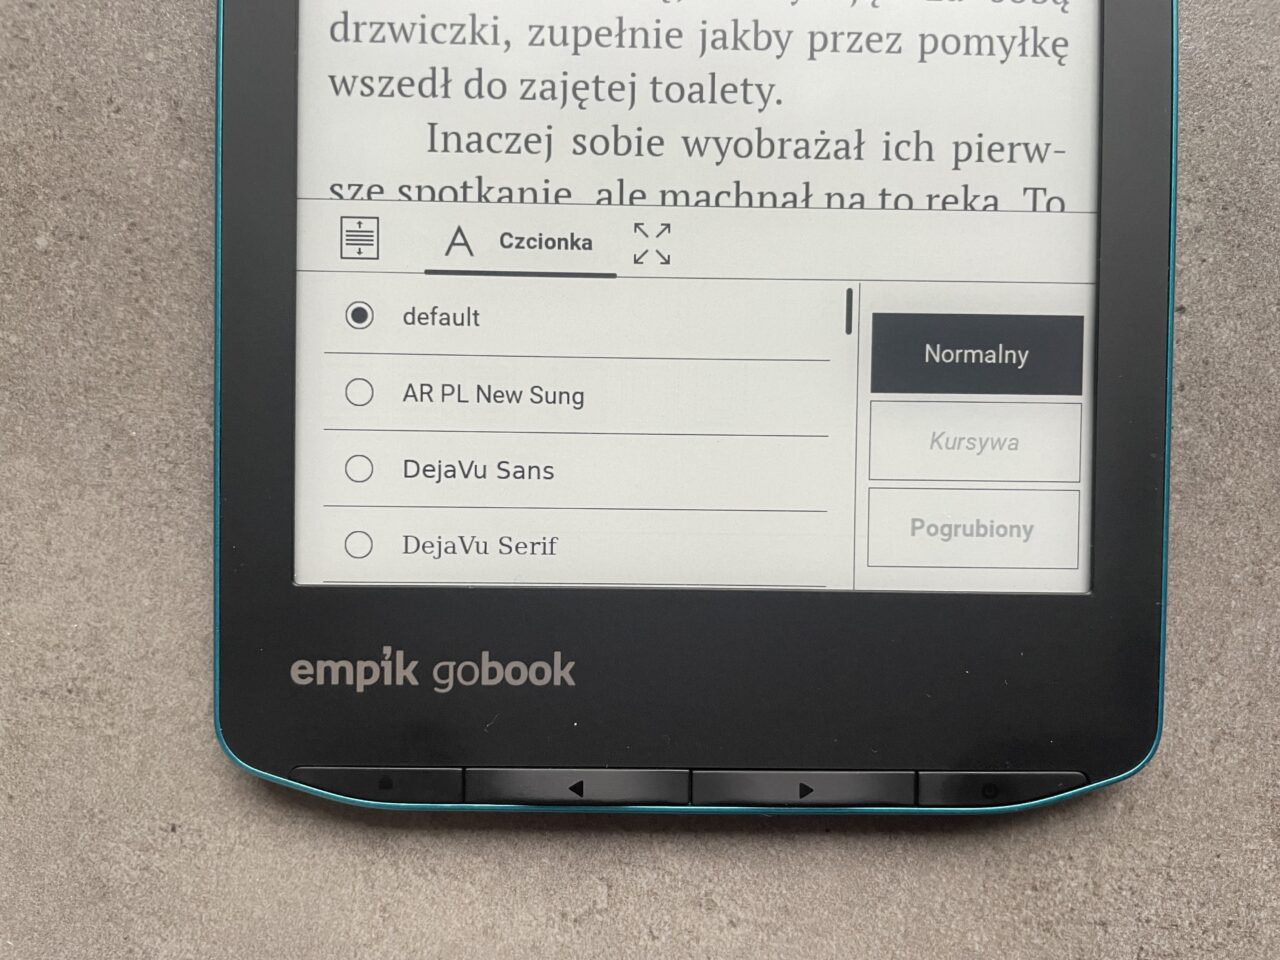 Czytnik e-booków Empik GoBook wyświetlający menu ustawień czcionki z zaznaczoną opcją "default" oraz opcjami formatowania tekstu "Normalny", "Kursywa", i "Pogrubiony" obok fragmentu otwartej książki elektronicznej.